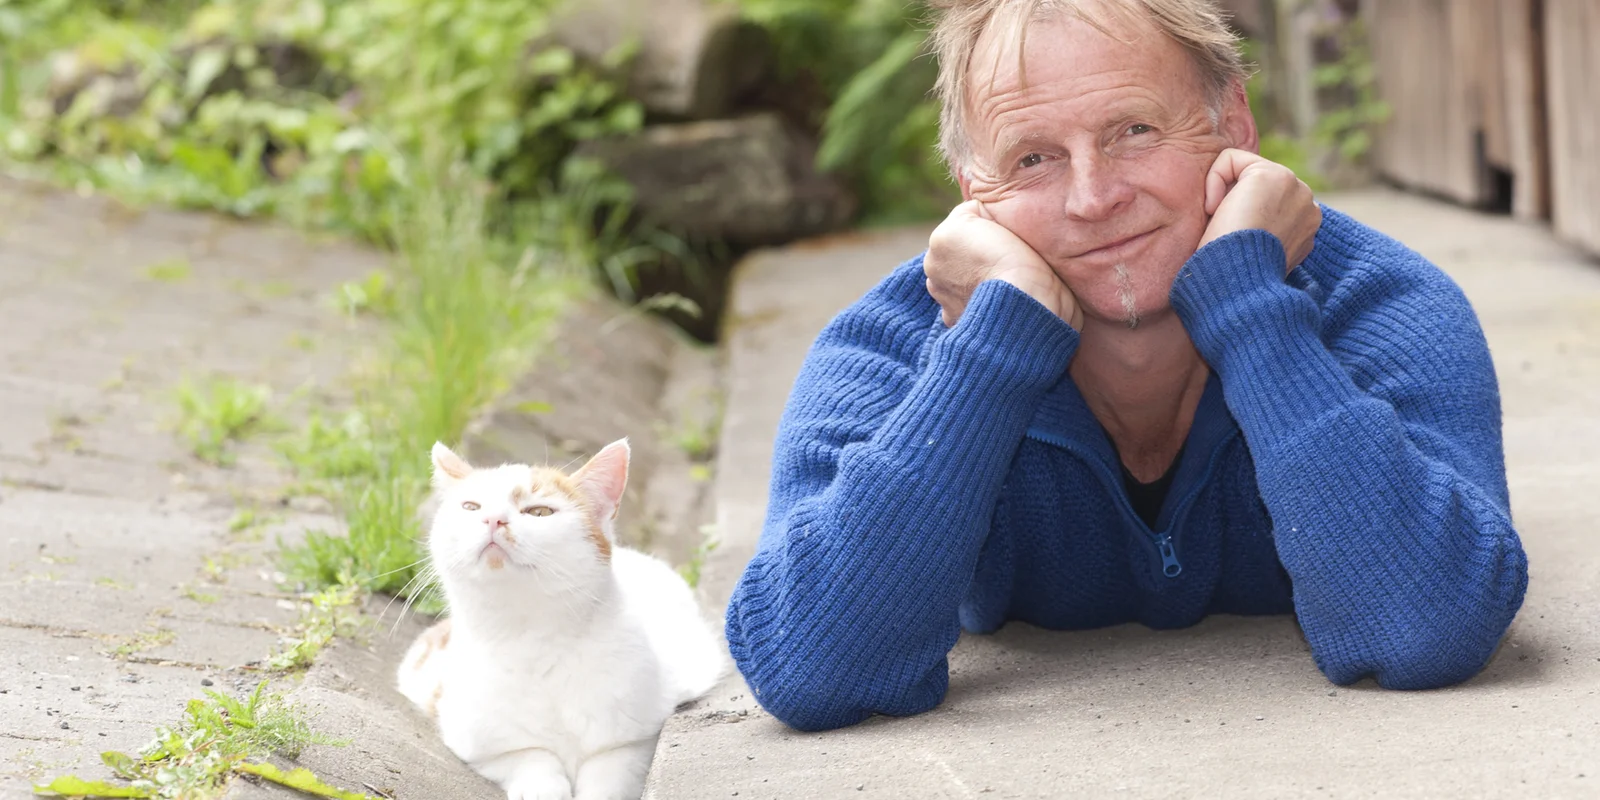 Nik J. Lucht liegt bäuchlings neben einer weißen Katze auf einem Betonboden und Blickt in die Kamera. Den Kopf hat er in die Hände gestützt.